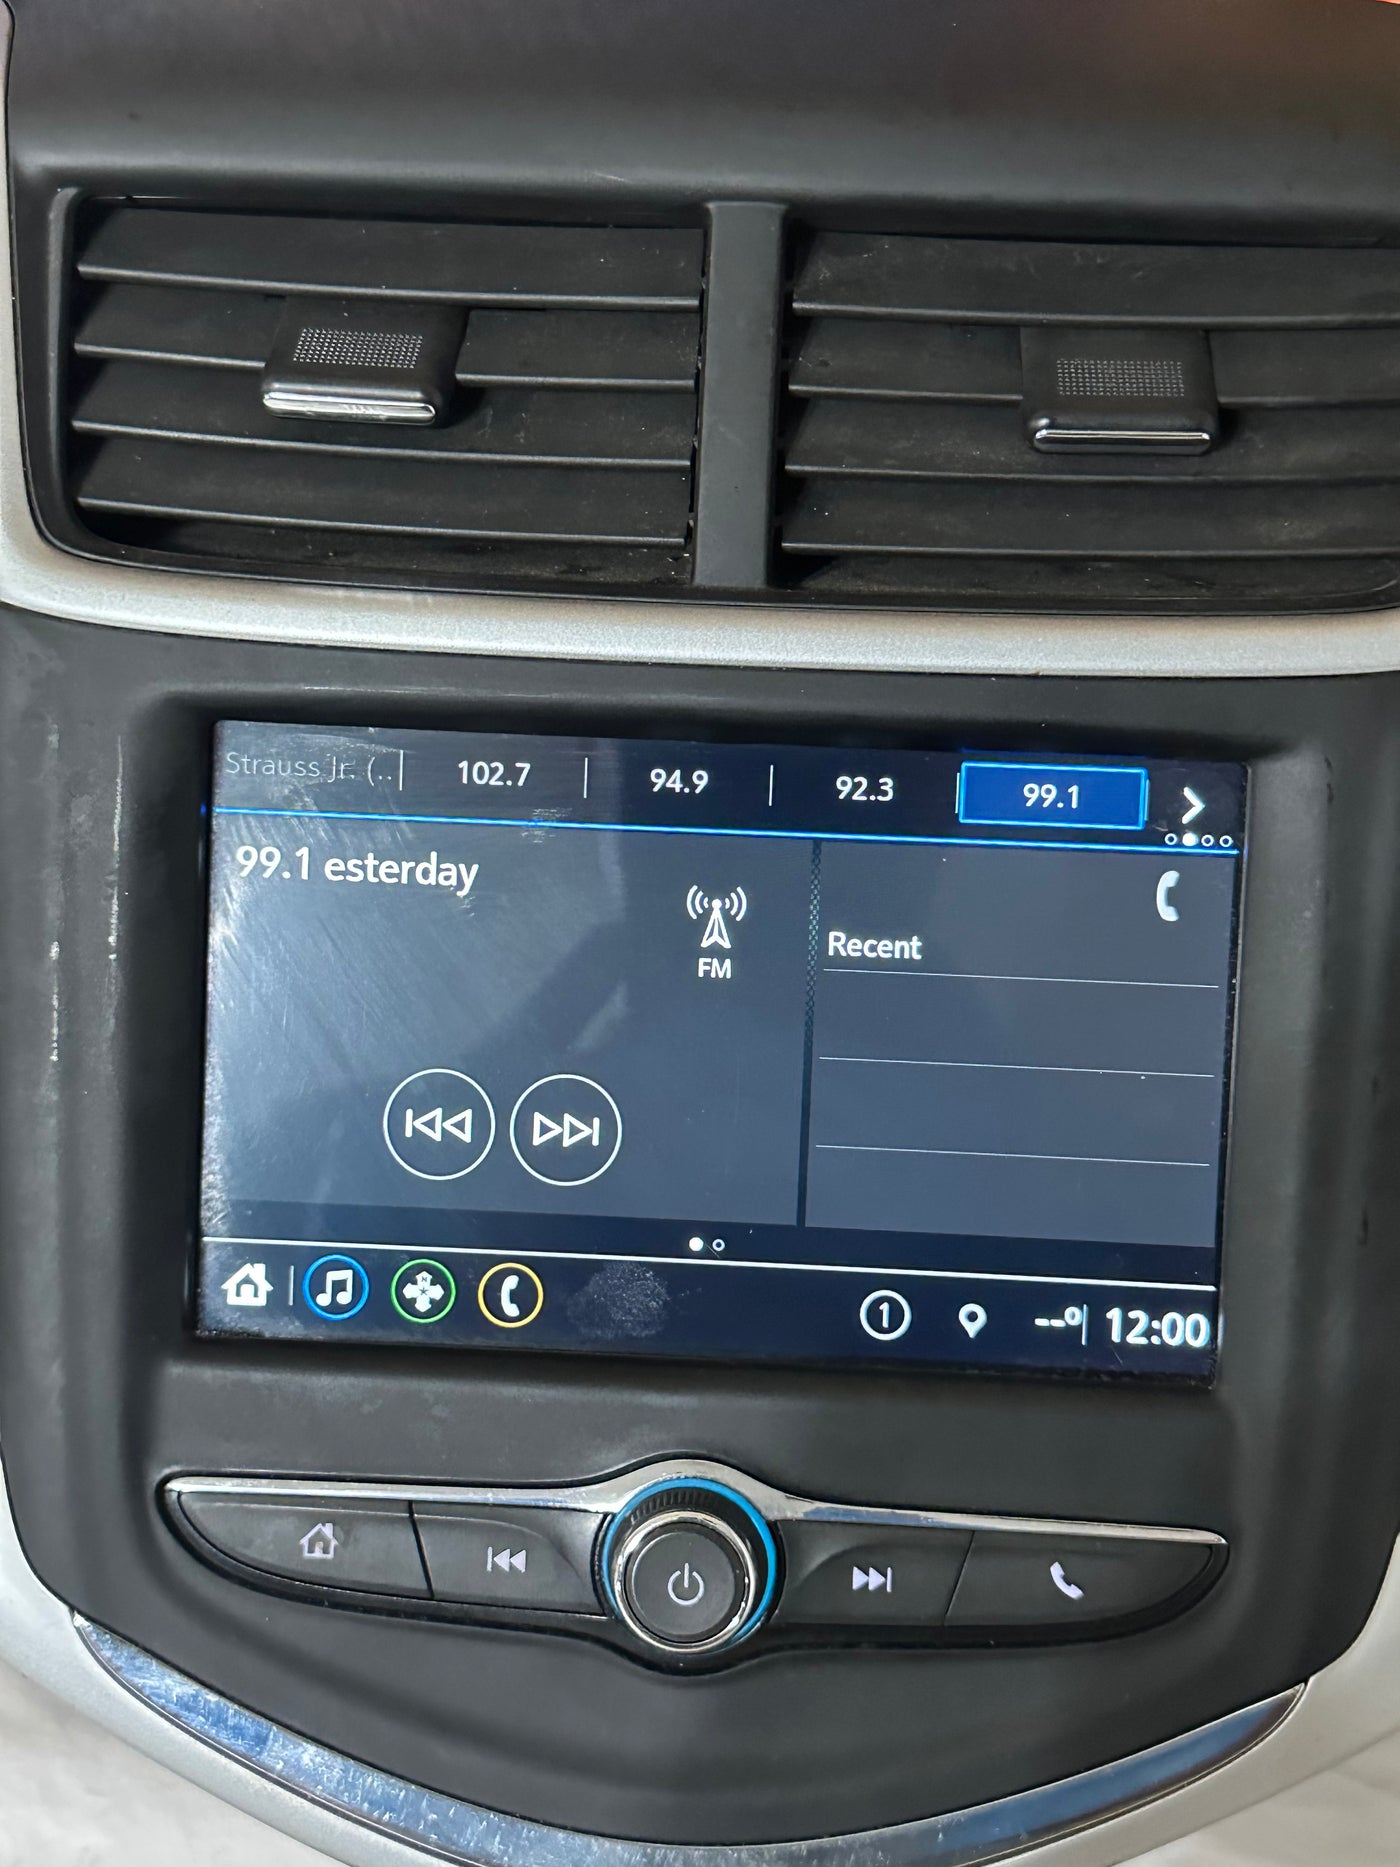 2017 - 2018 Chevrolet Chevy Cruze Malibu OEM 7 Radio Touch Screen Multi Media